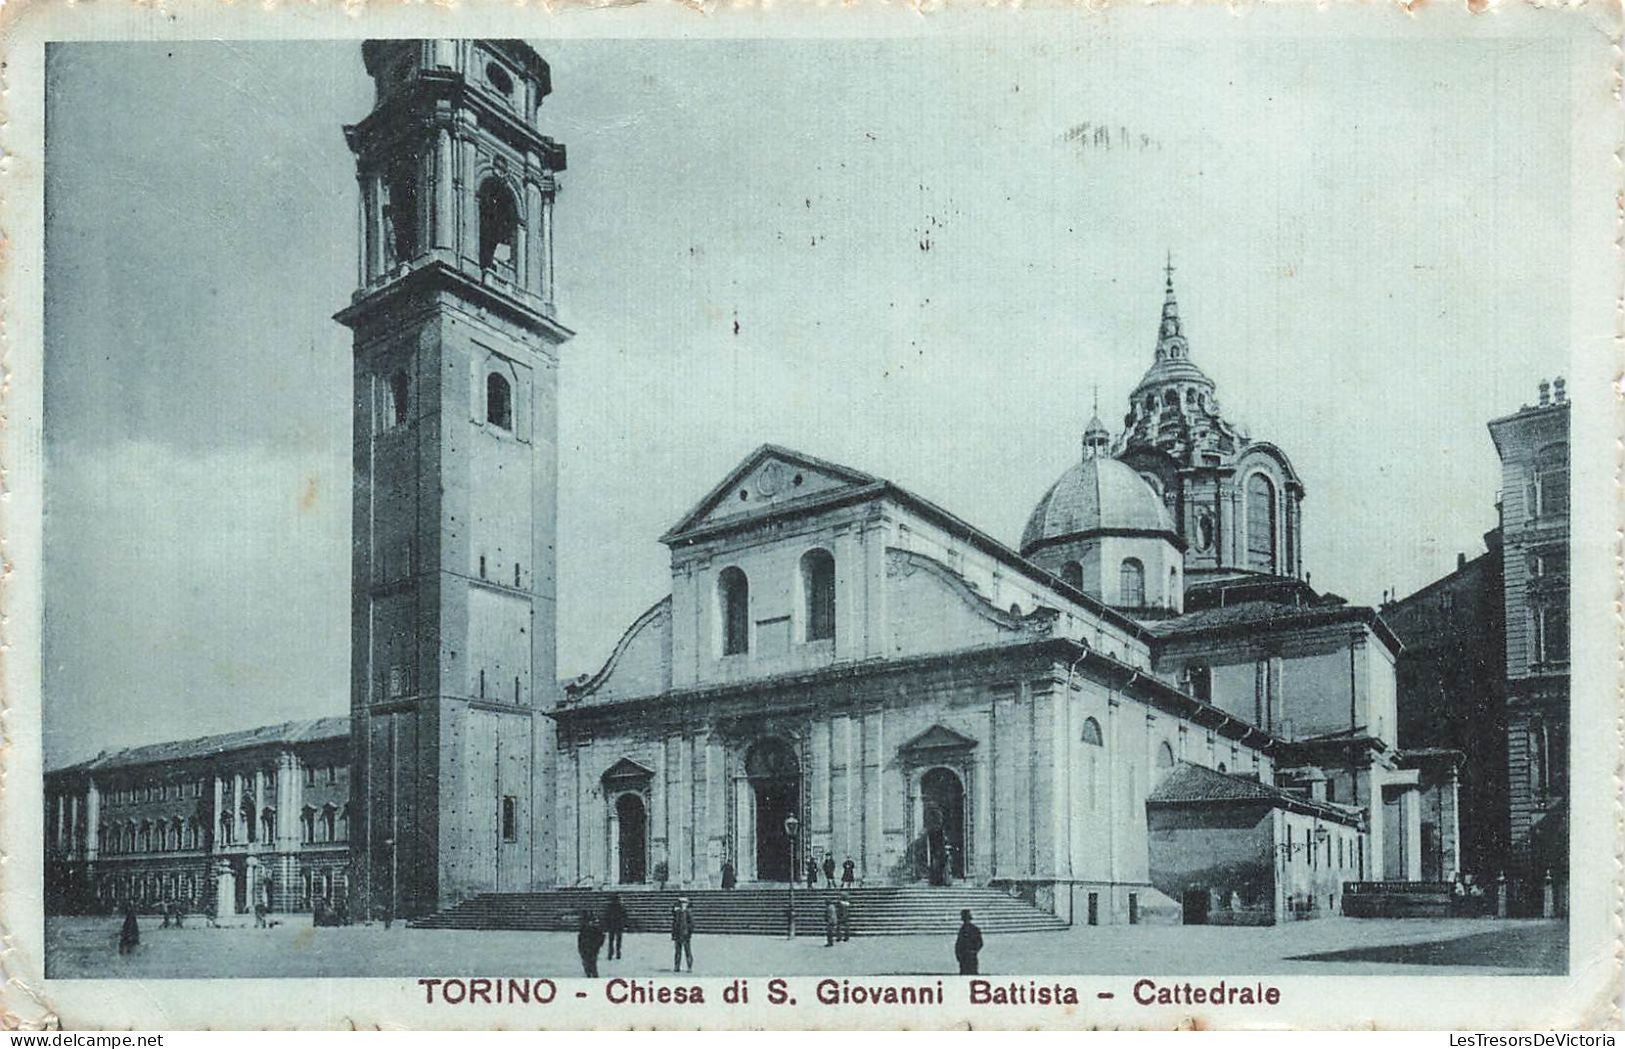 ITALIE - Torino - Chiesa Di S. Giovanni Battista - Cattedrale - Carte Postale Ancienne - Andere Monumente & Gebäude